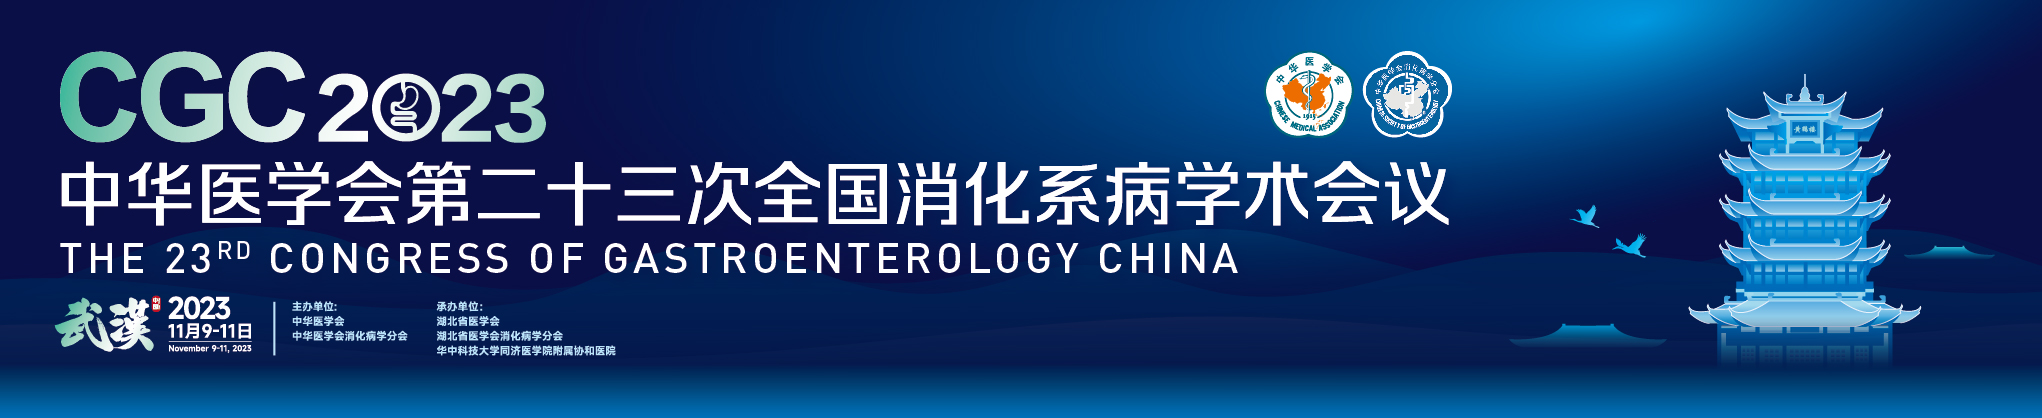 中华医学会第二十三次全国消化系病学术会议（CGC2023）